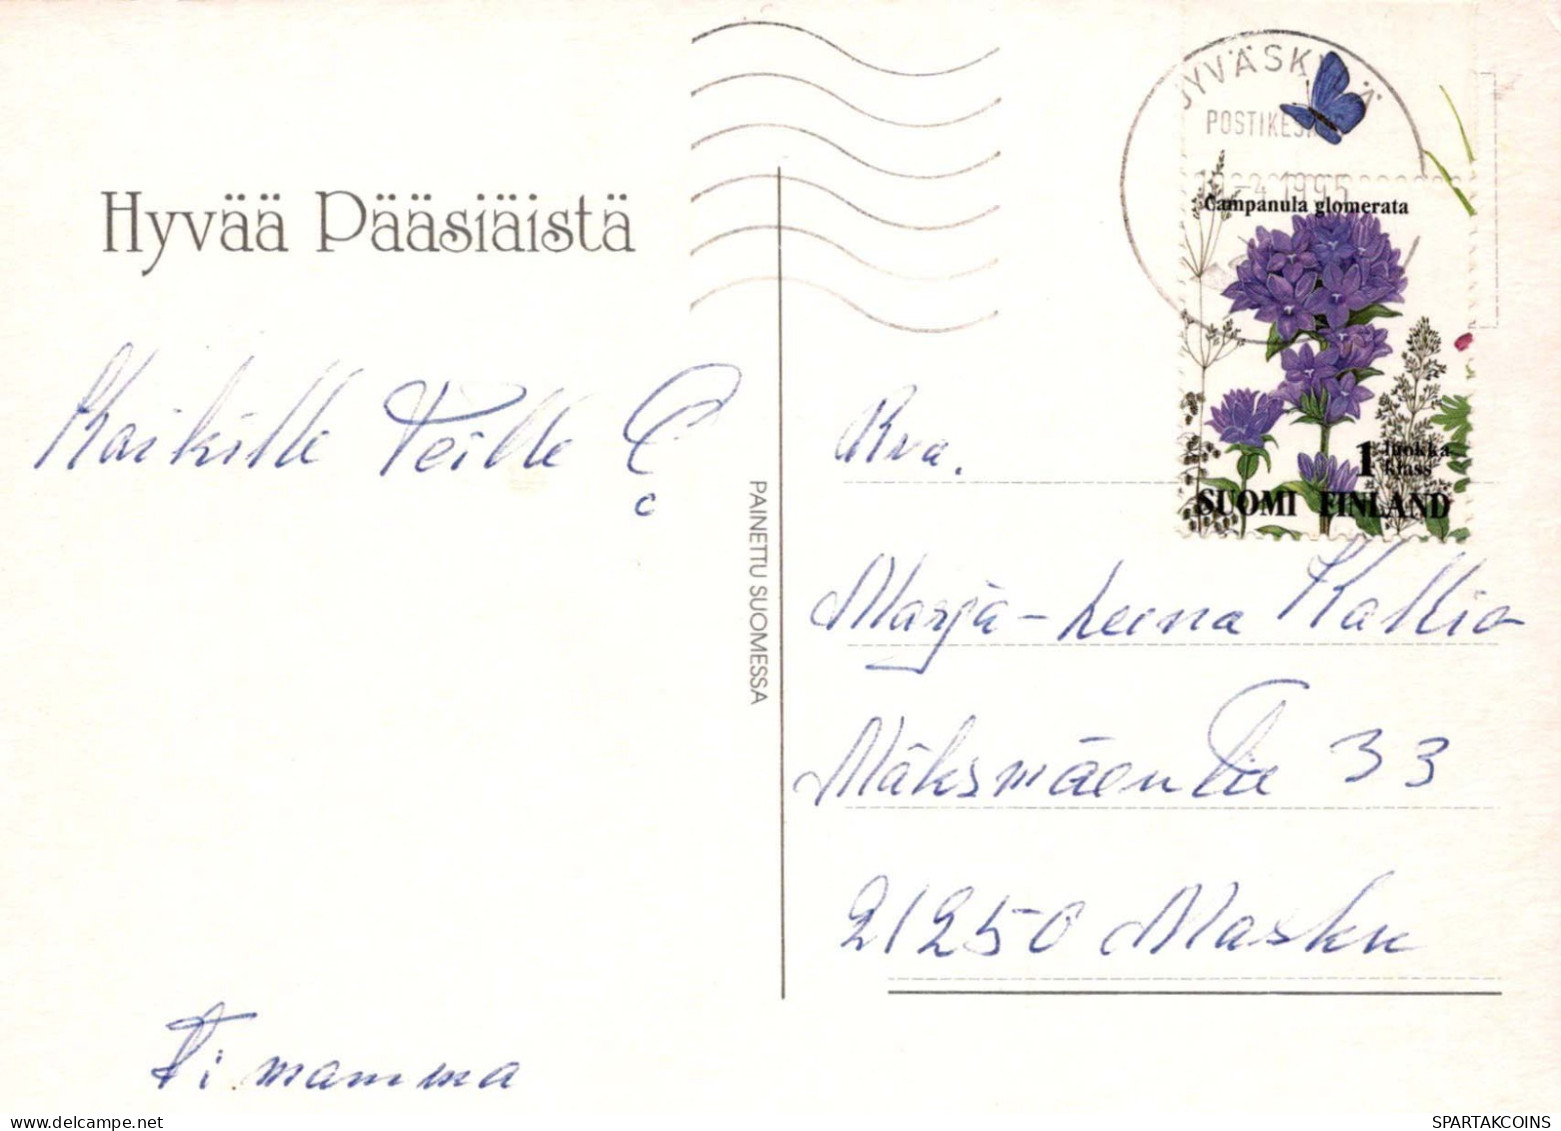 PÂQUES ŒUF Vintage Carte Postale CPSM #PBO174.A - Pâques